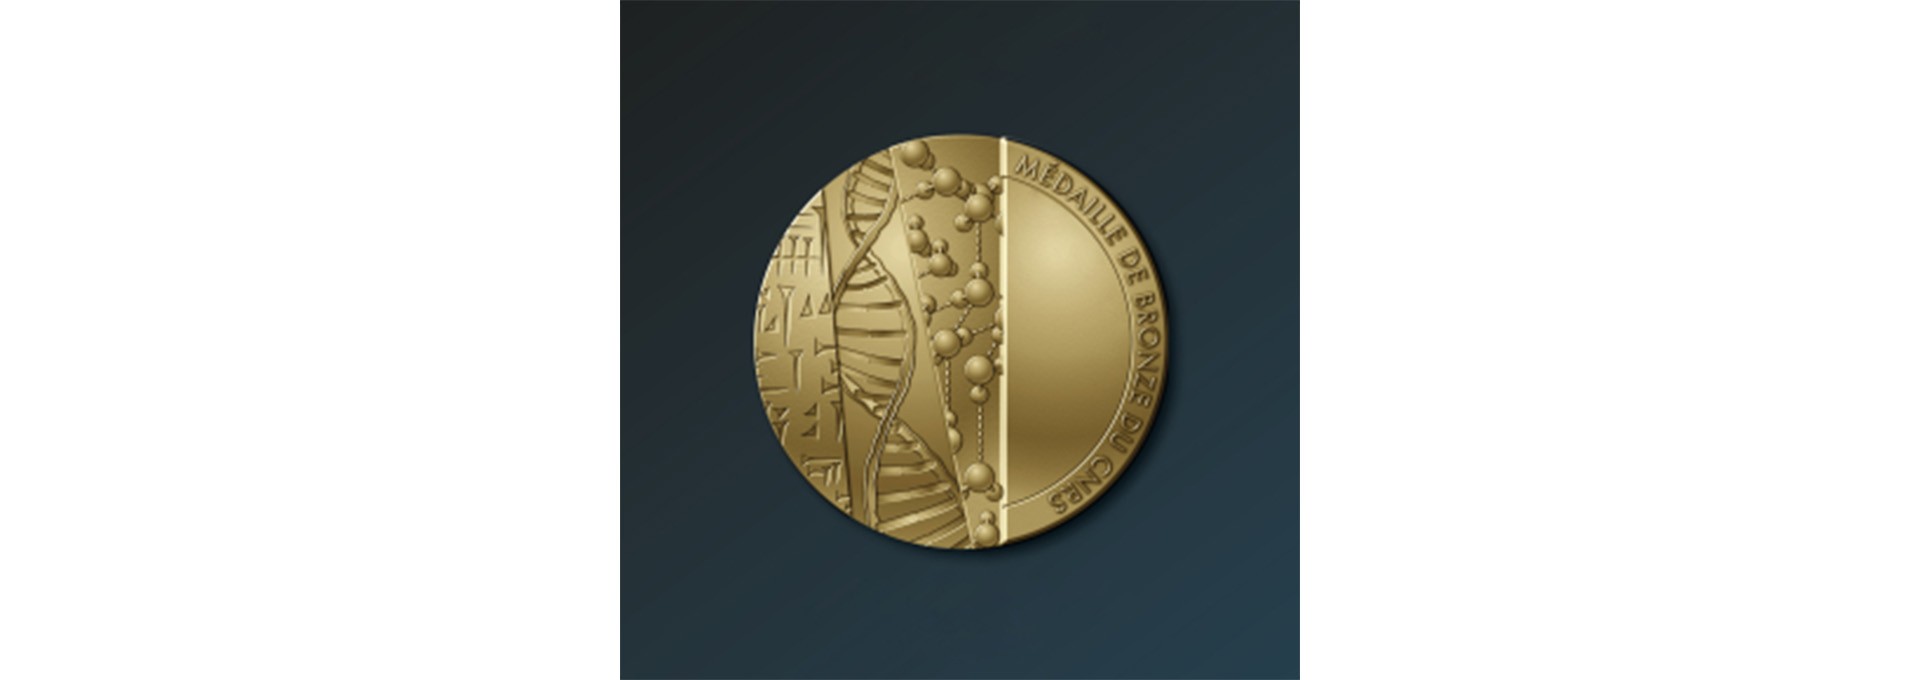 Cinq chercheurs de l’X et d'IP Paris récompensés par la médaille de bronze du CNRS